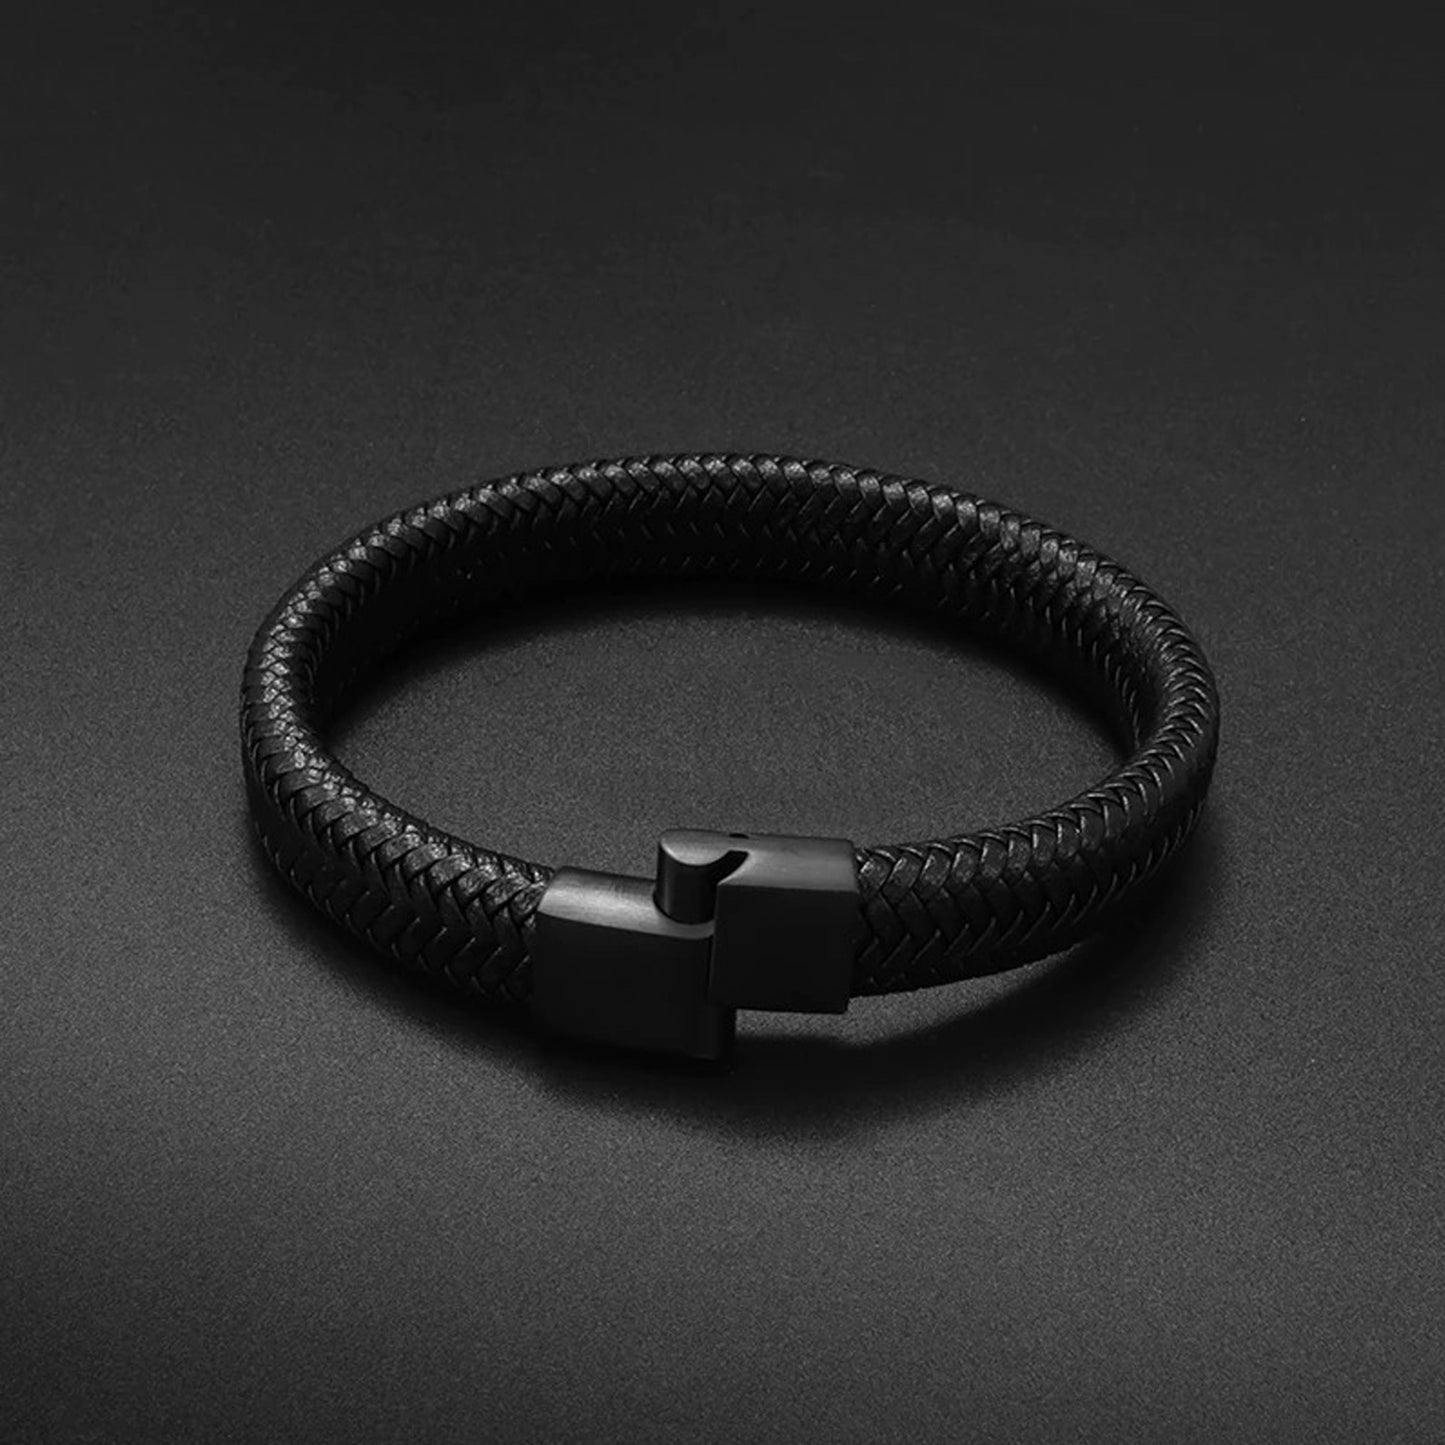 HOME BOX-Fashion Frill Stylish Black Unisex Leather Bracelet.